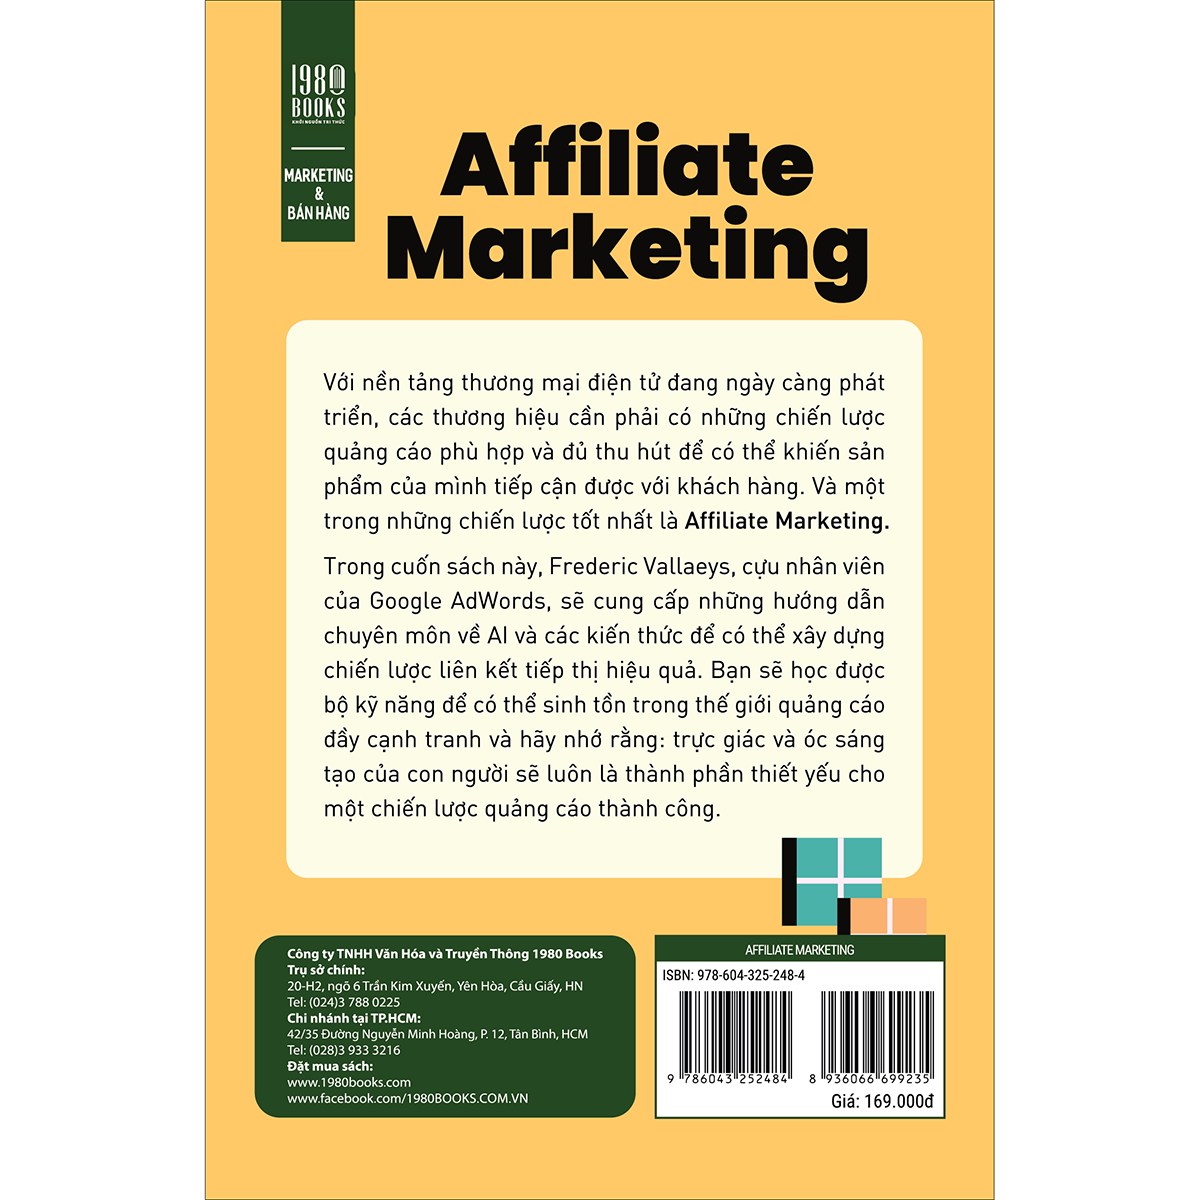 Hình ảnh Affiliate Marketing: Thấu hiểu tâm lý khách hàng - Tối ưu chi phí quảng cáo - Thúc đẩy doanh số bán hàng